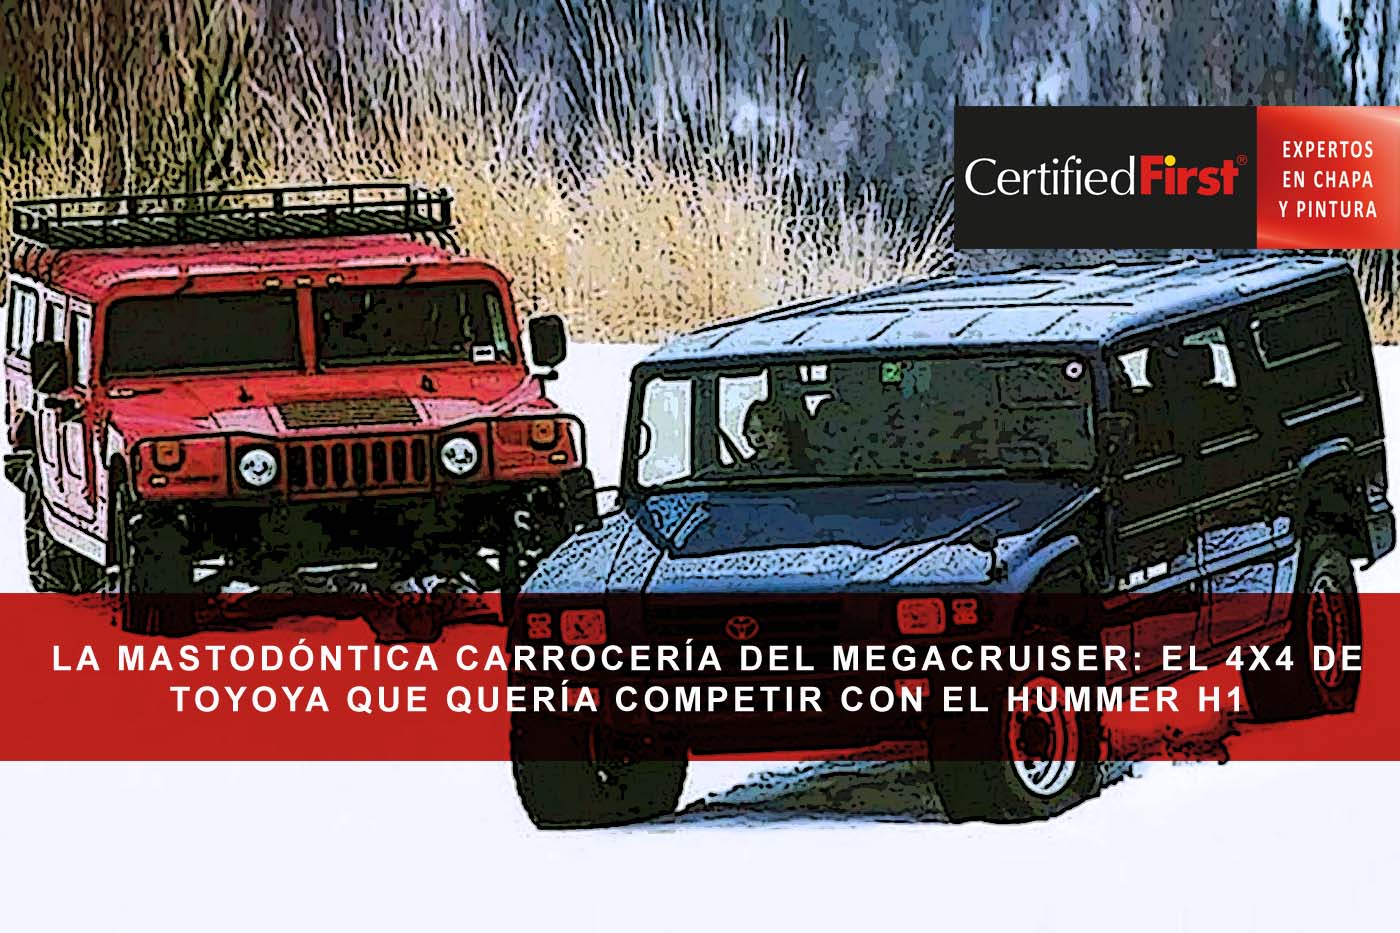 La mastodóntica carrocería del Megacruiser: el 4x4 de Toyota, que quería competir con el Hummer H1